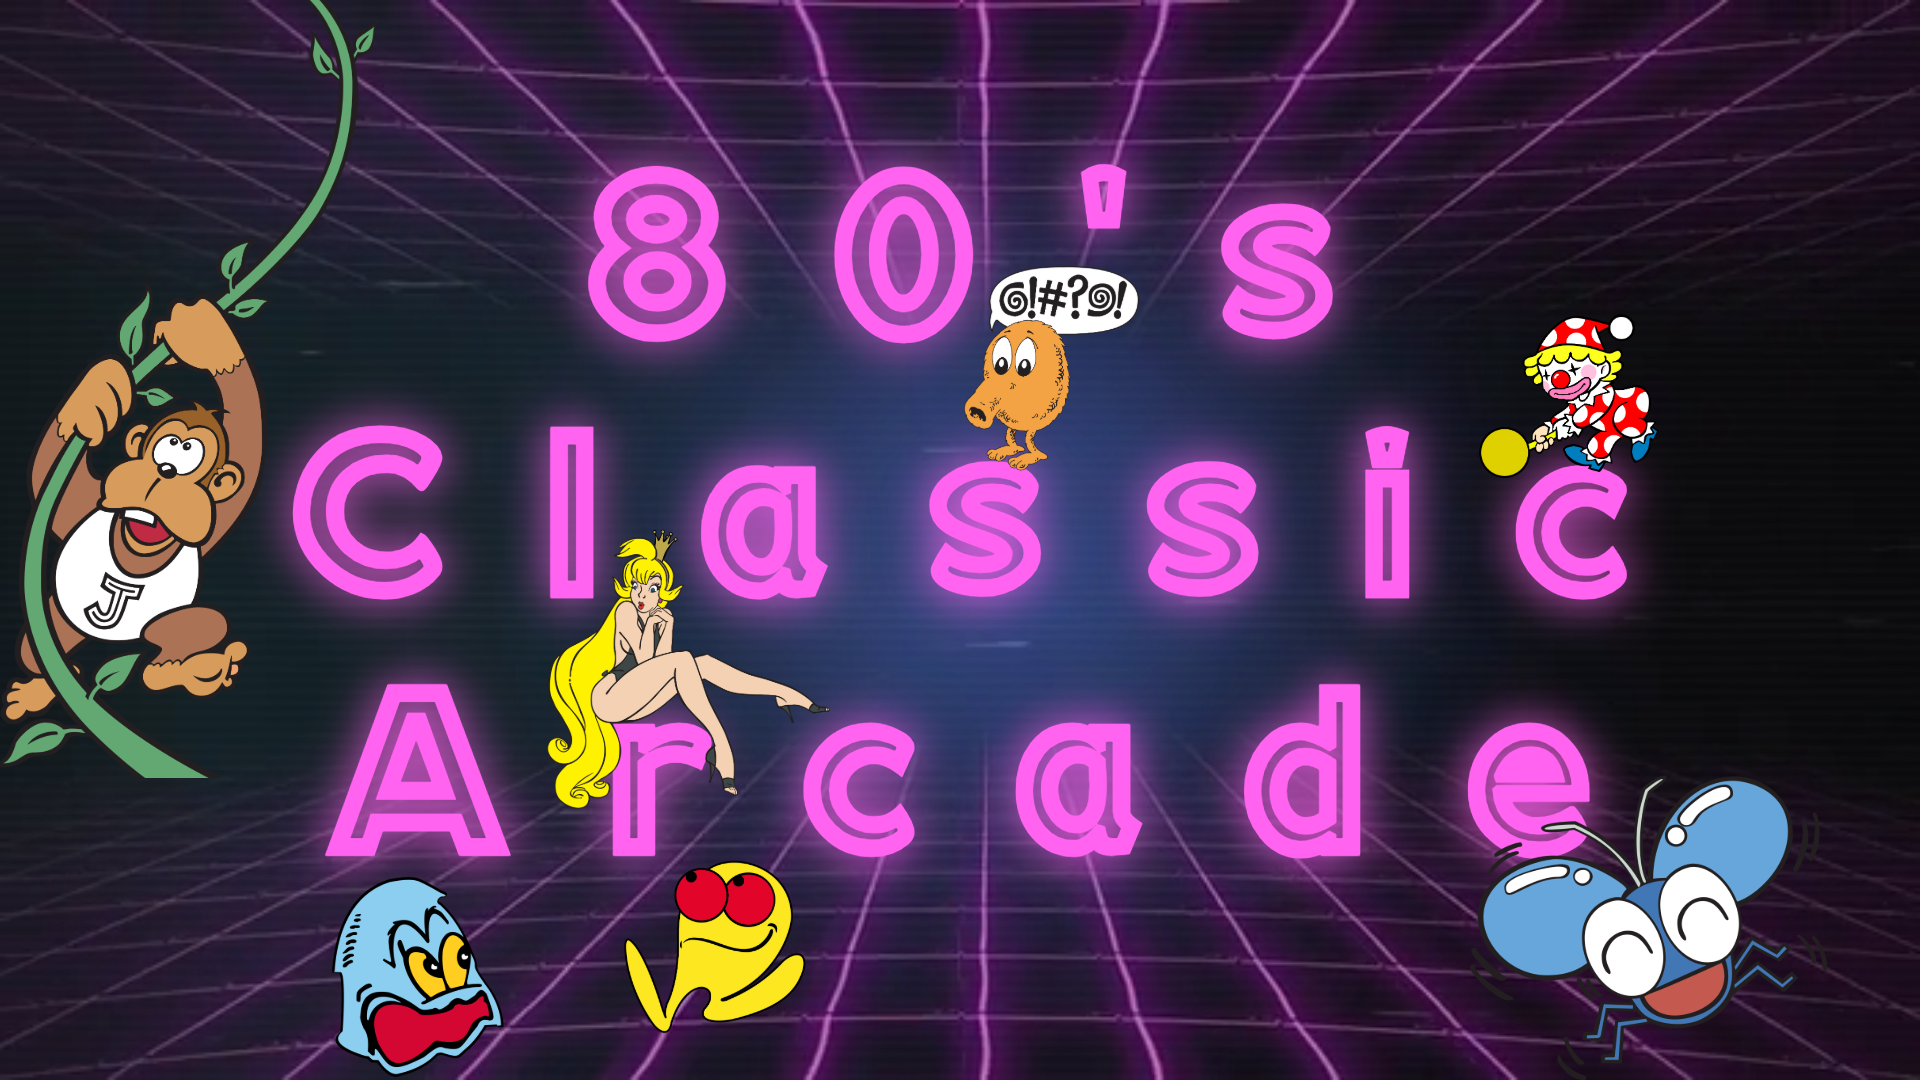 80's Classic Arcade